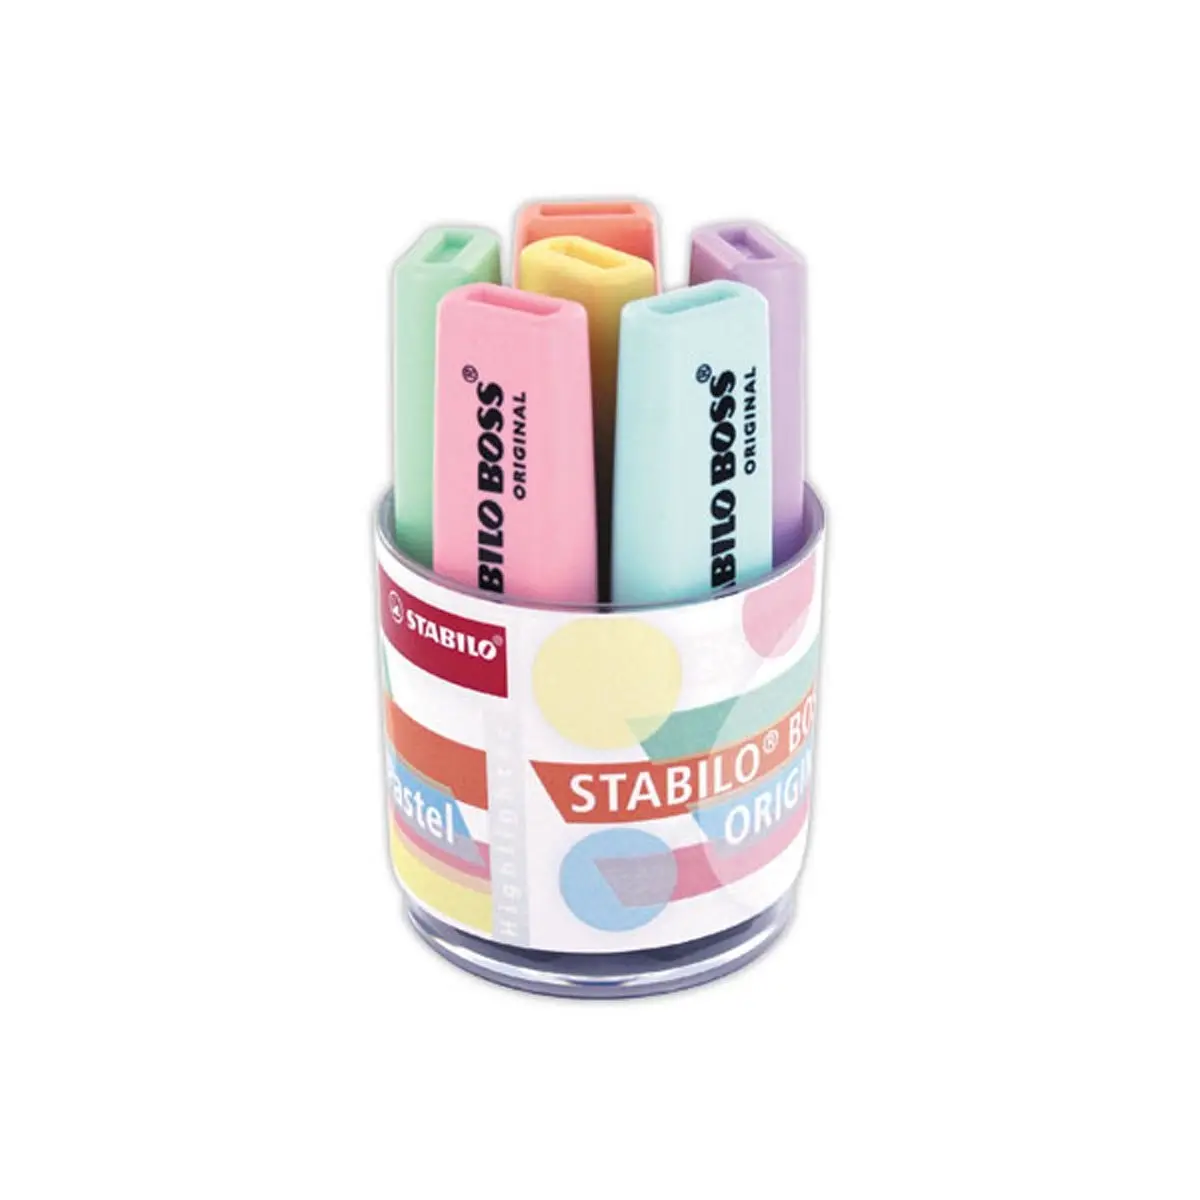 STABILO BOSS Original surligneur fluo Pastel - 6 pièces